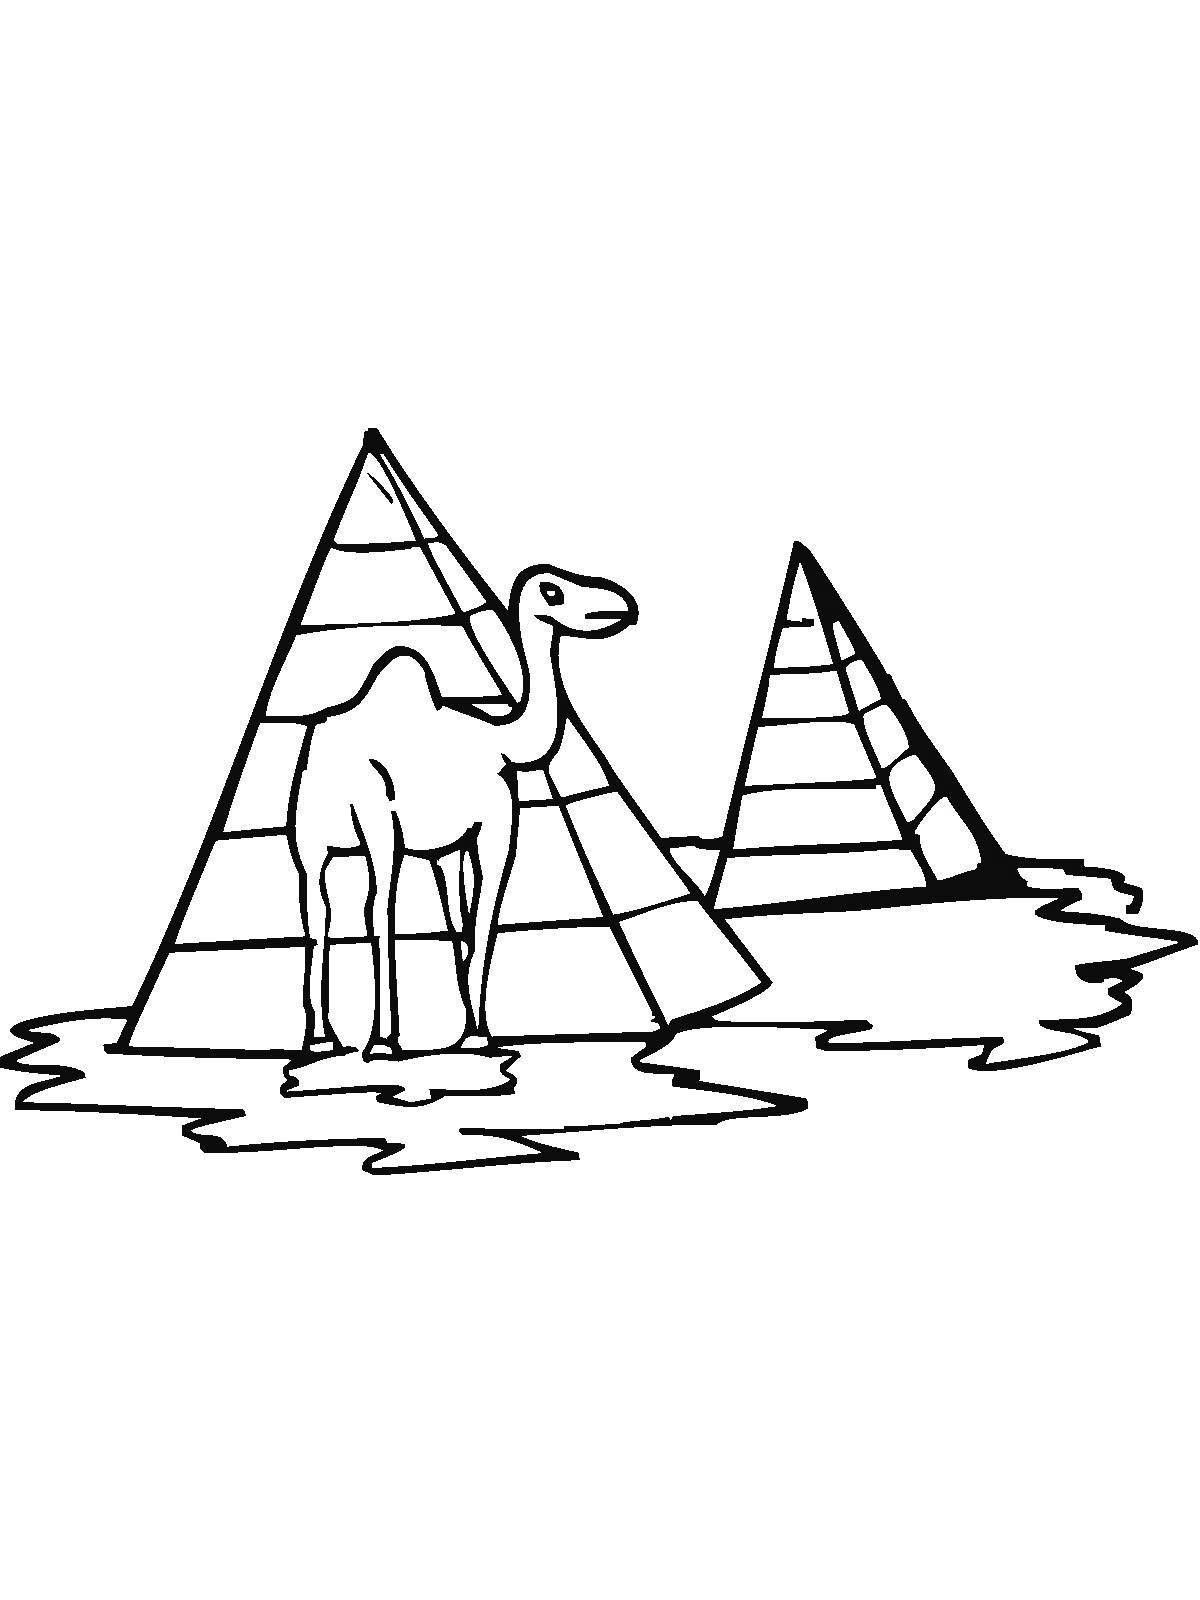 Раскраска пирамида для детей 3-4 лет